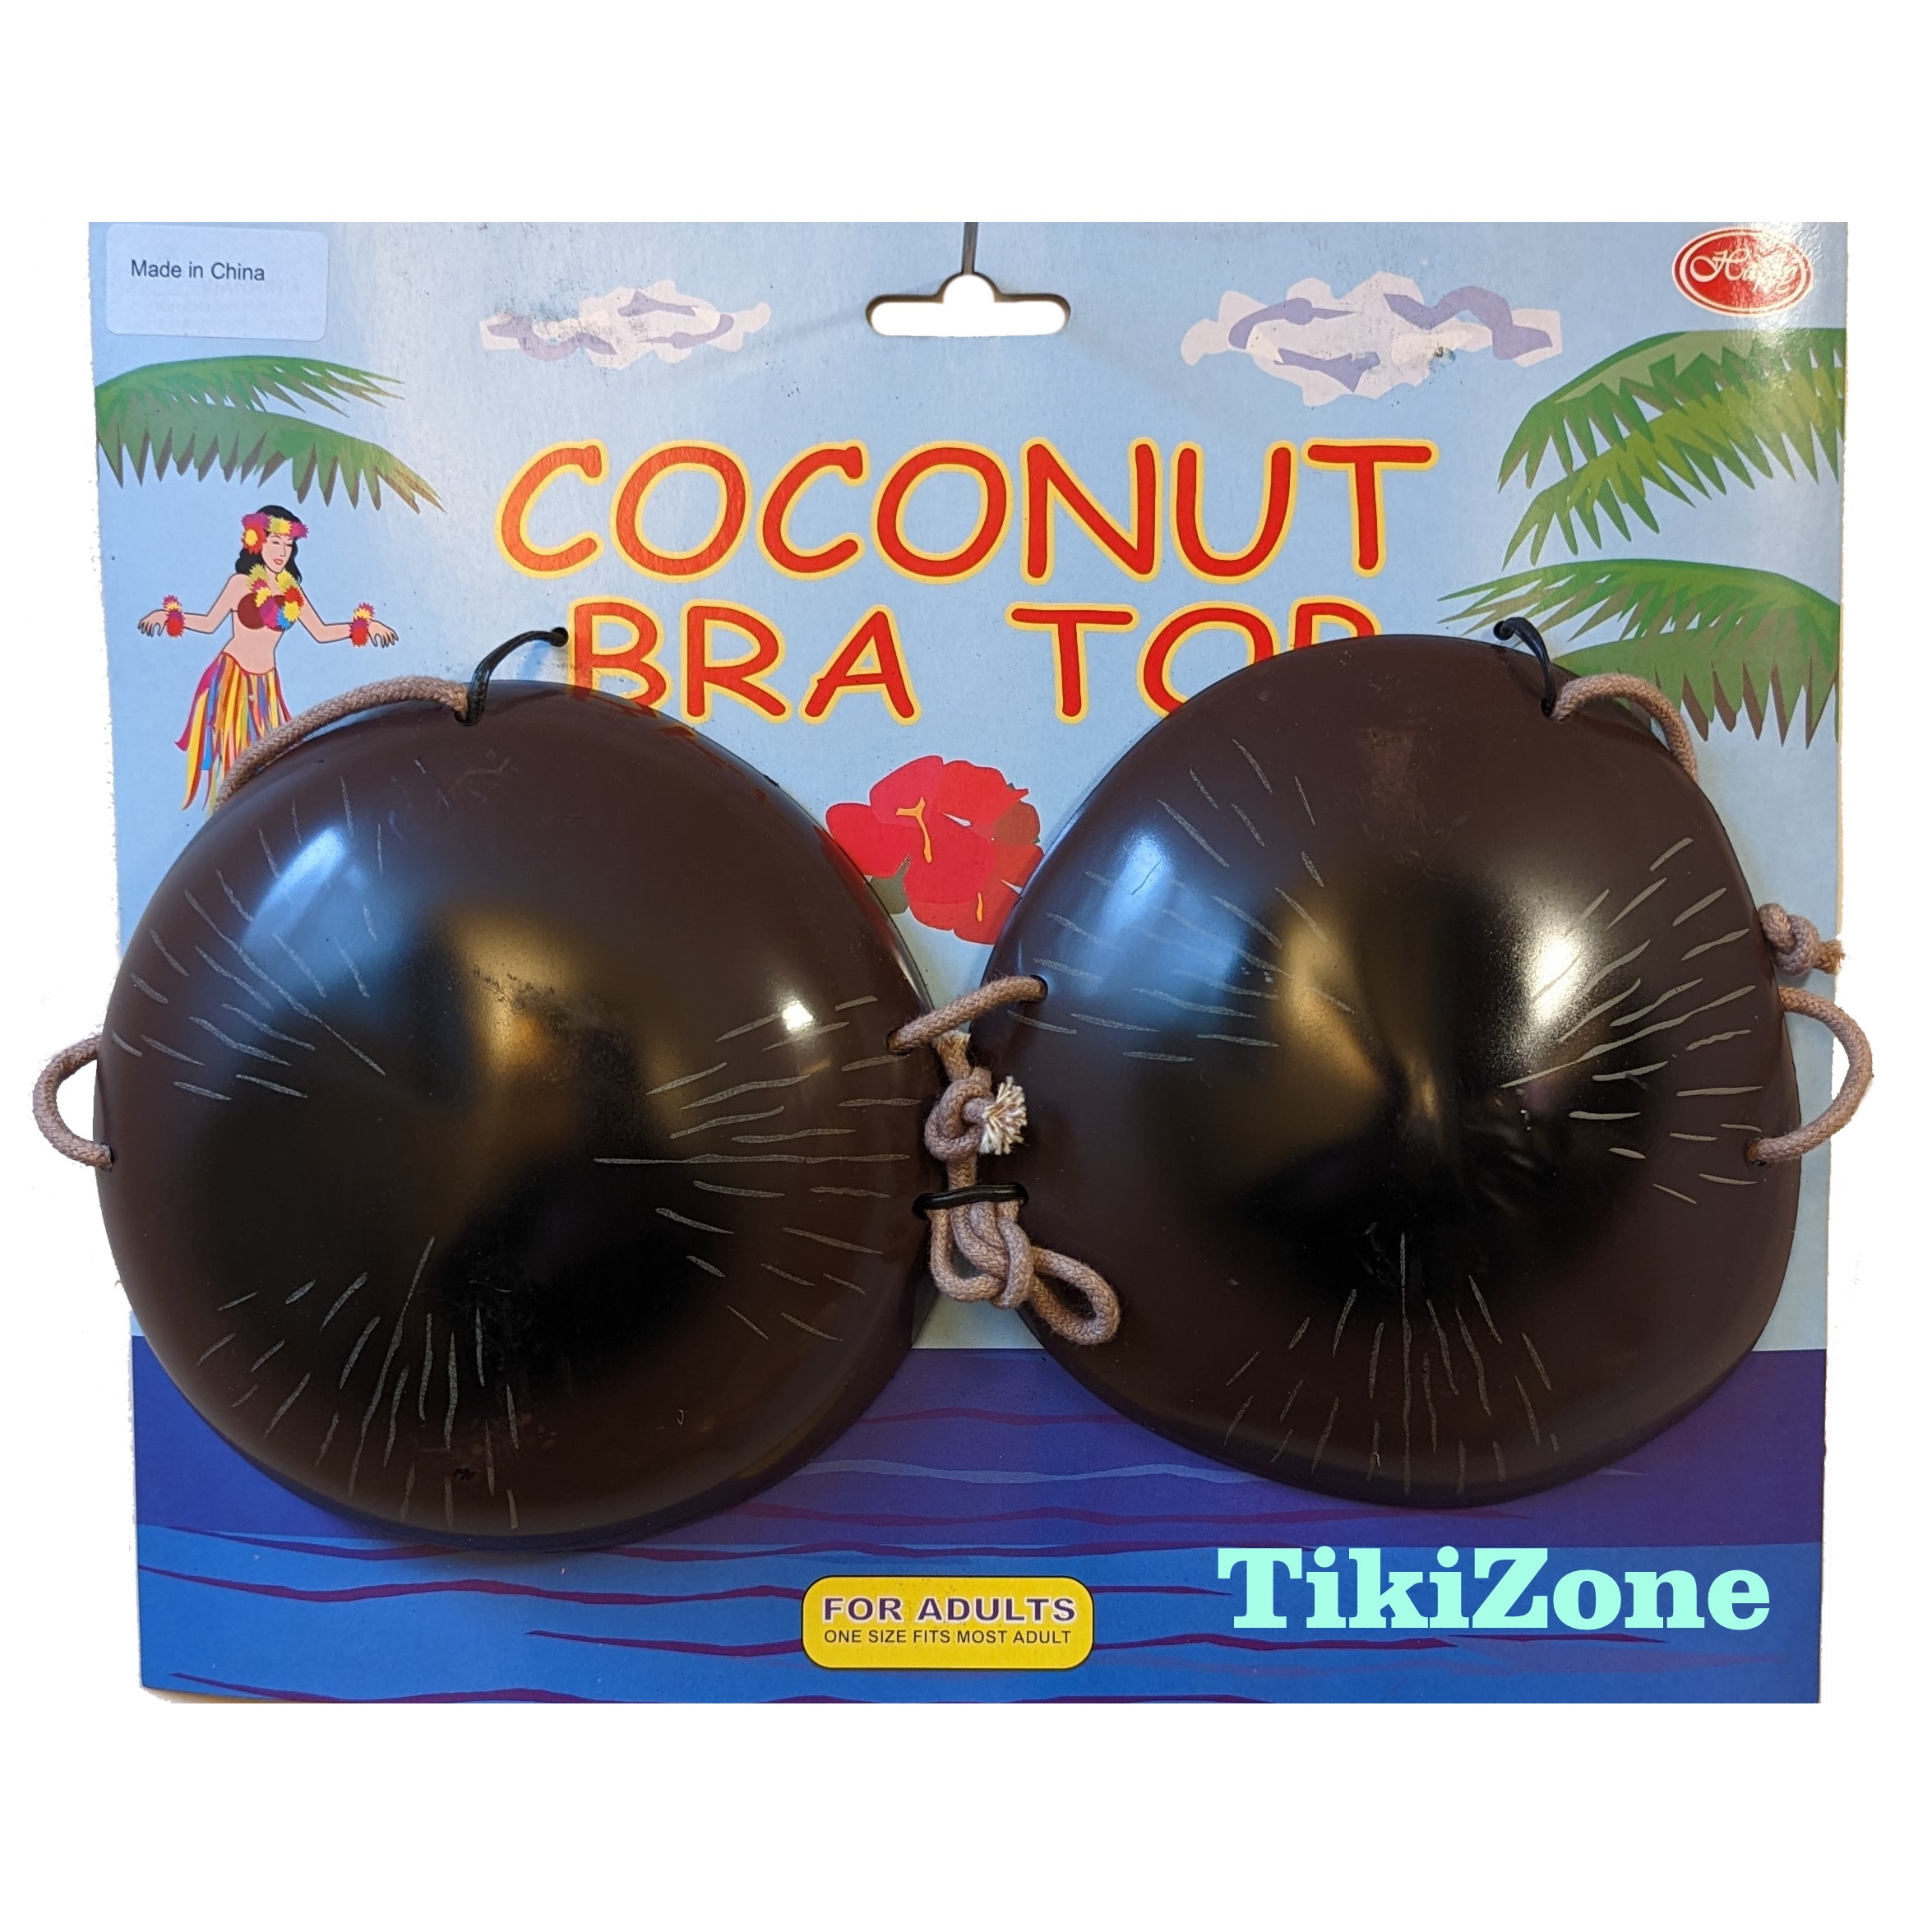 Coconut bra